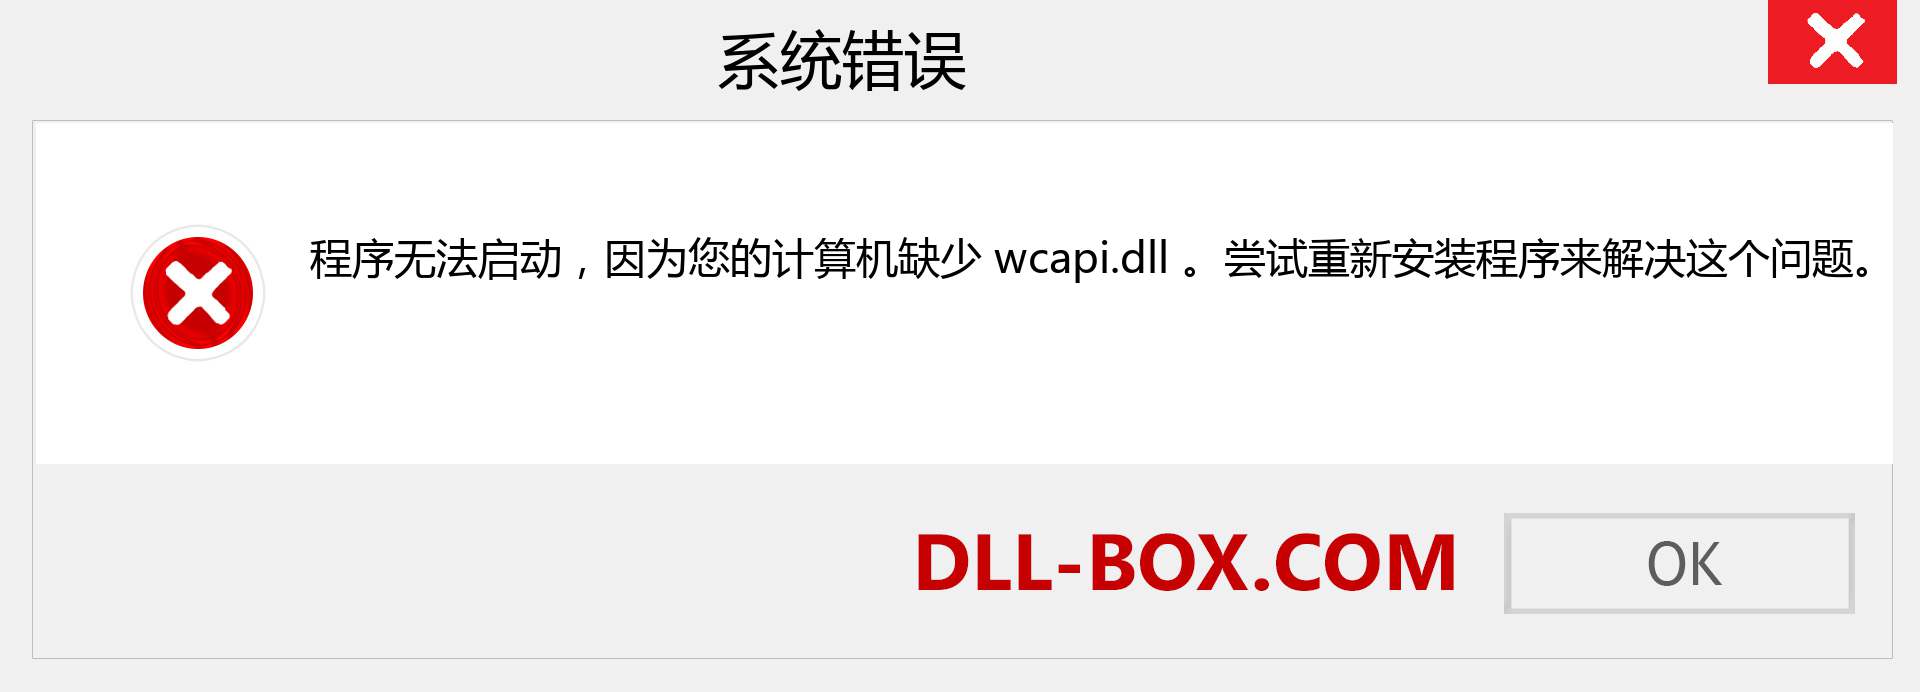 wcapi.dll 文件丢失？。 适用于 Windows 7、8、10 的下载 - 修复 Windows、照片、图像上的 wcapi dll 丢失错误